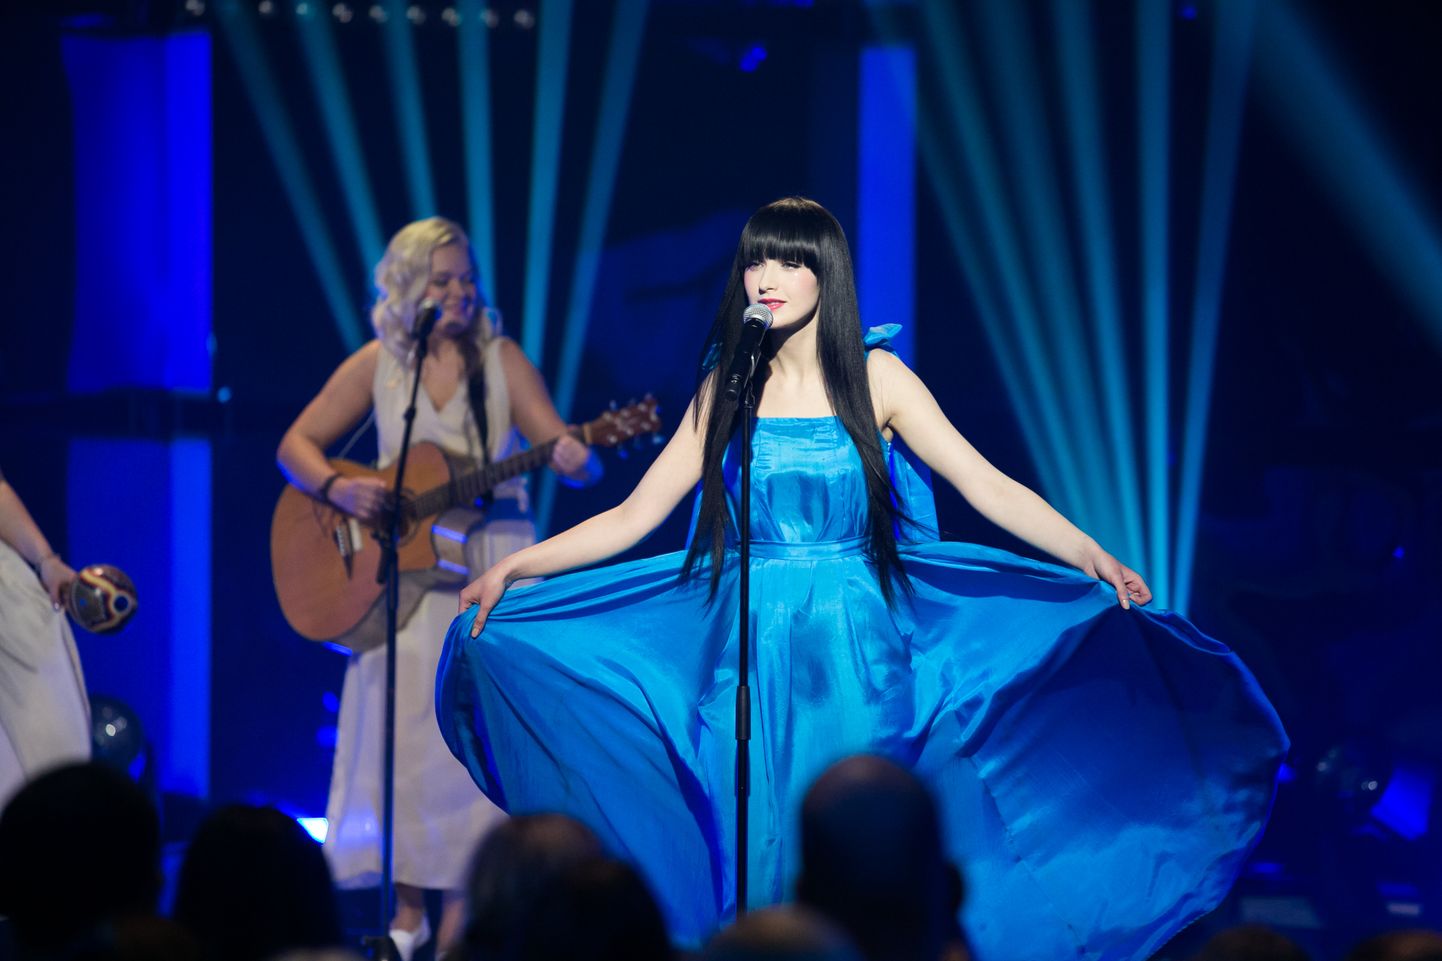 Eesti Laul 2014 Sandra Nurmsalu esitamas laulu "Kui tuuled pöörduvad".